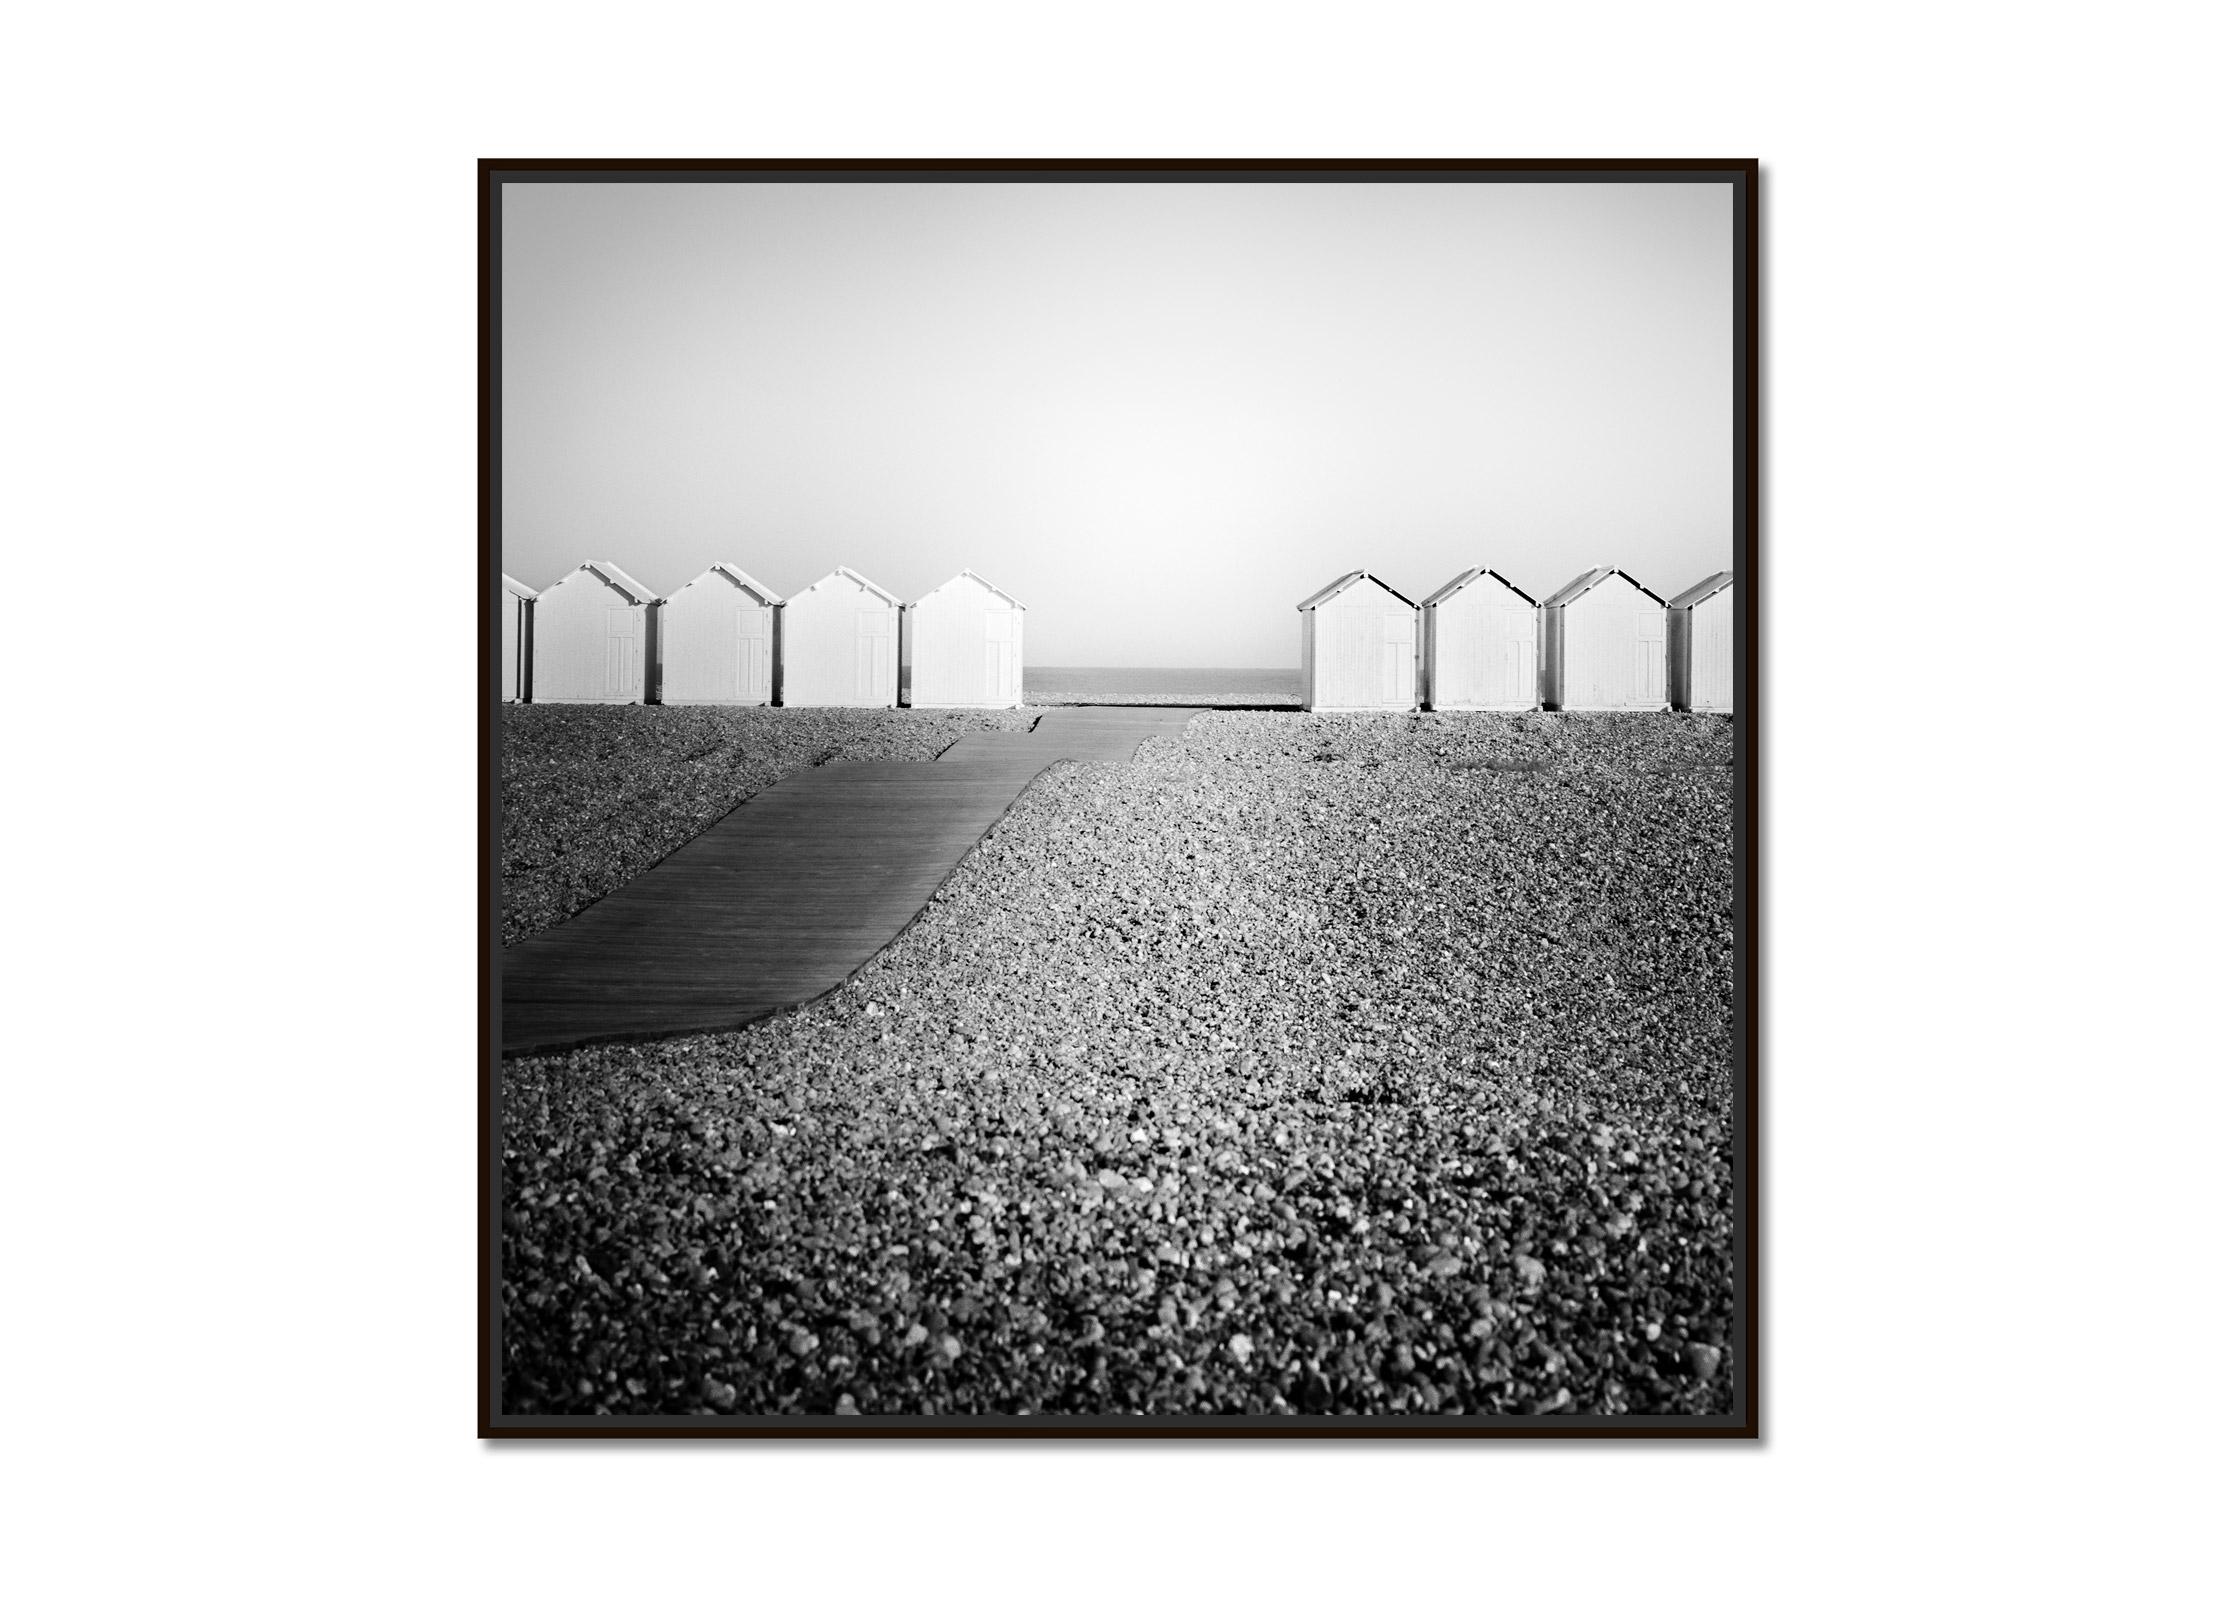 Holzhütten, Promenade, Rocky Beach, Frankreich, Schwarz-Weiß-Landschaftsfotografie – Photograph von Gerald Berghammer